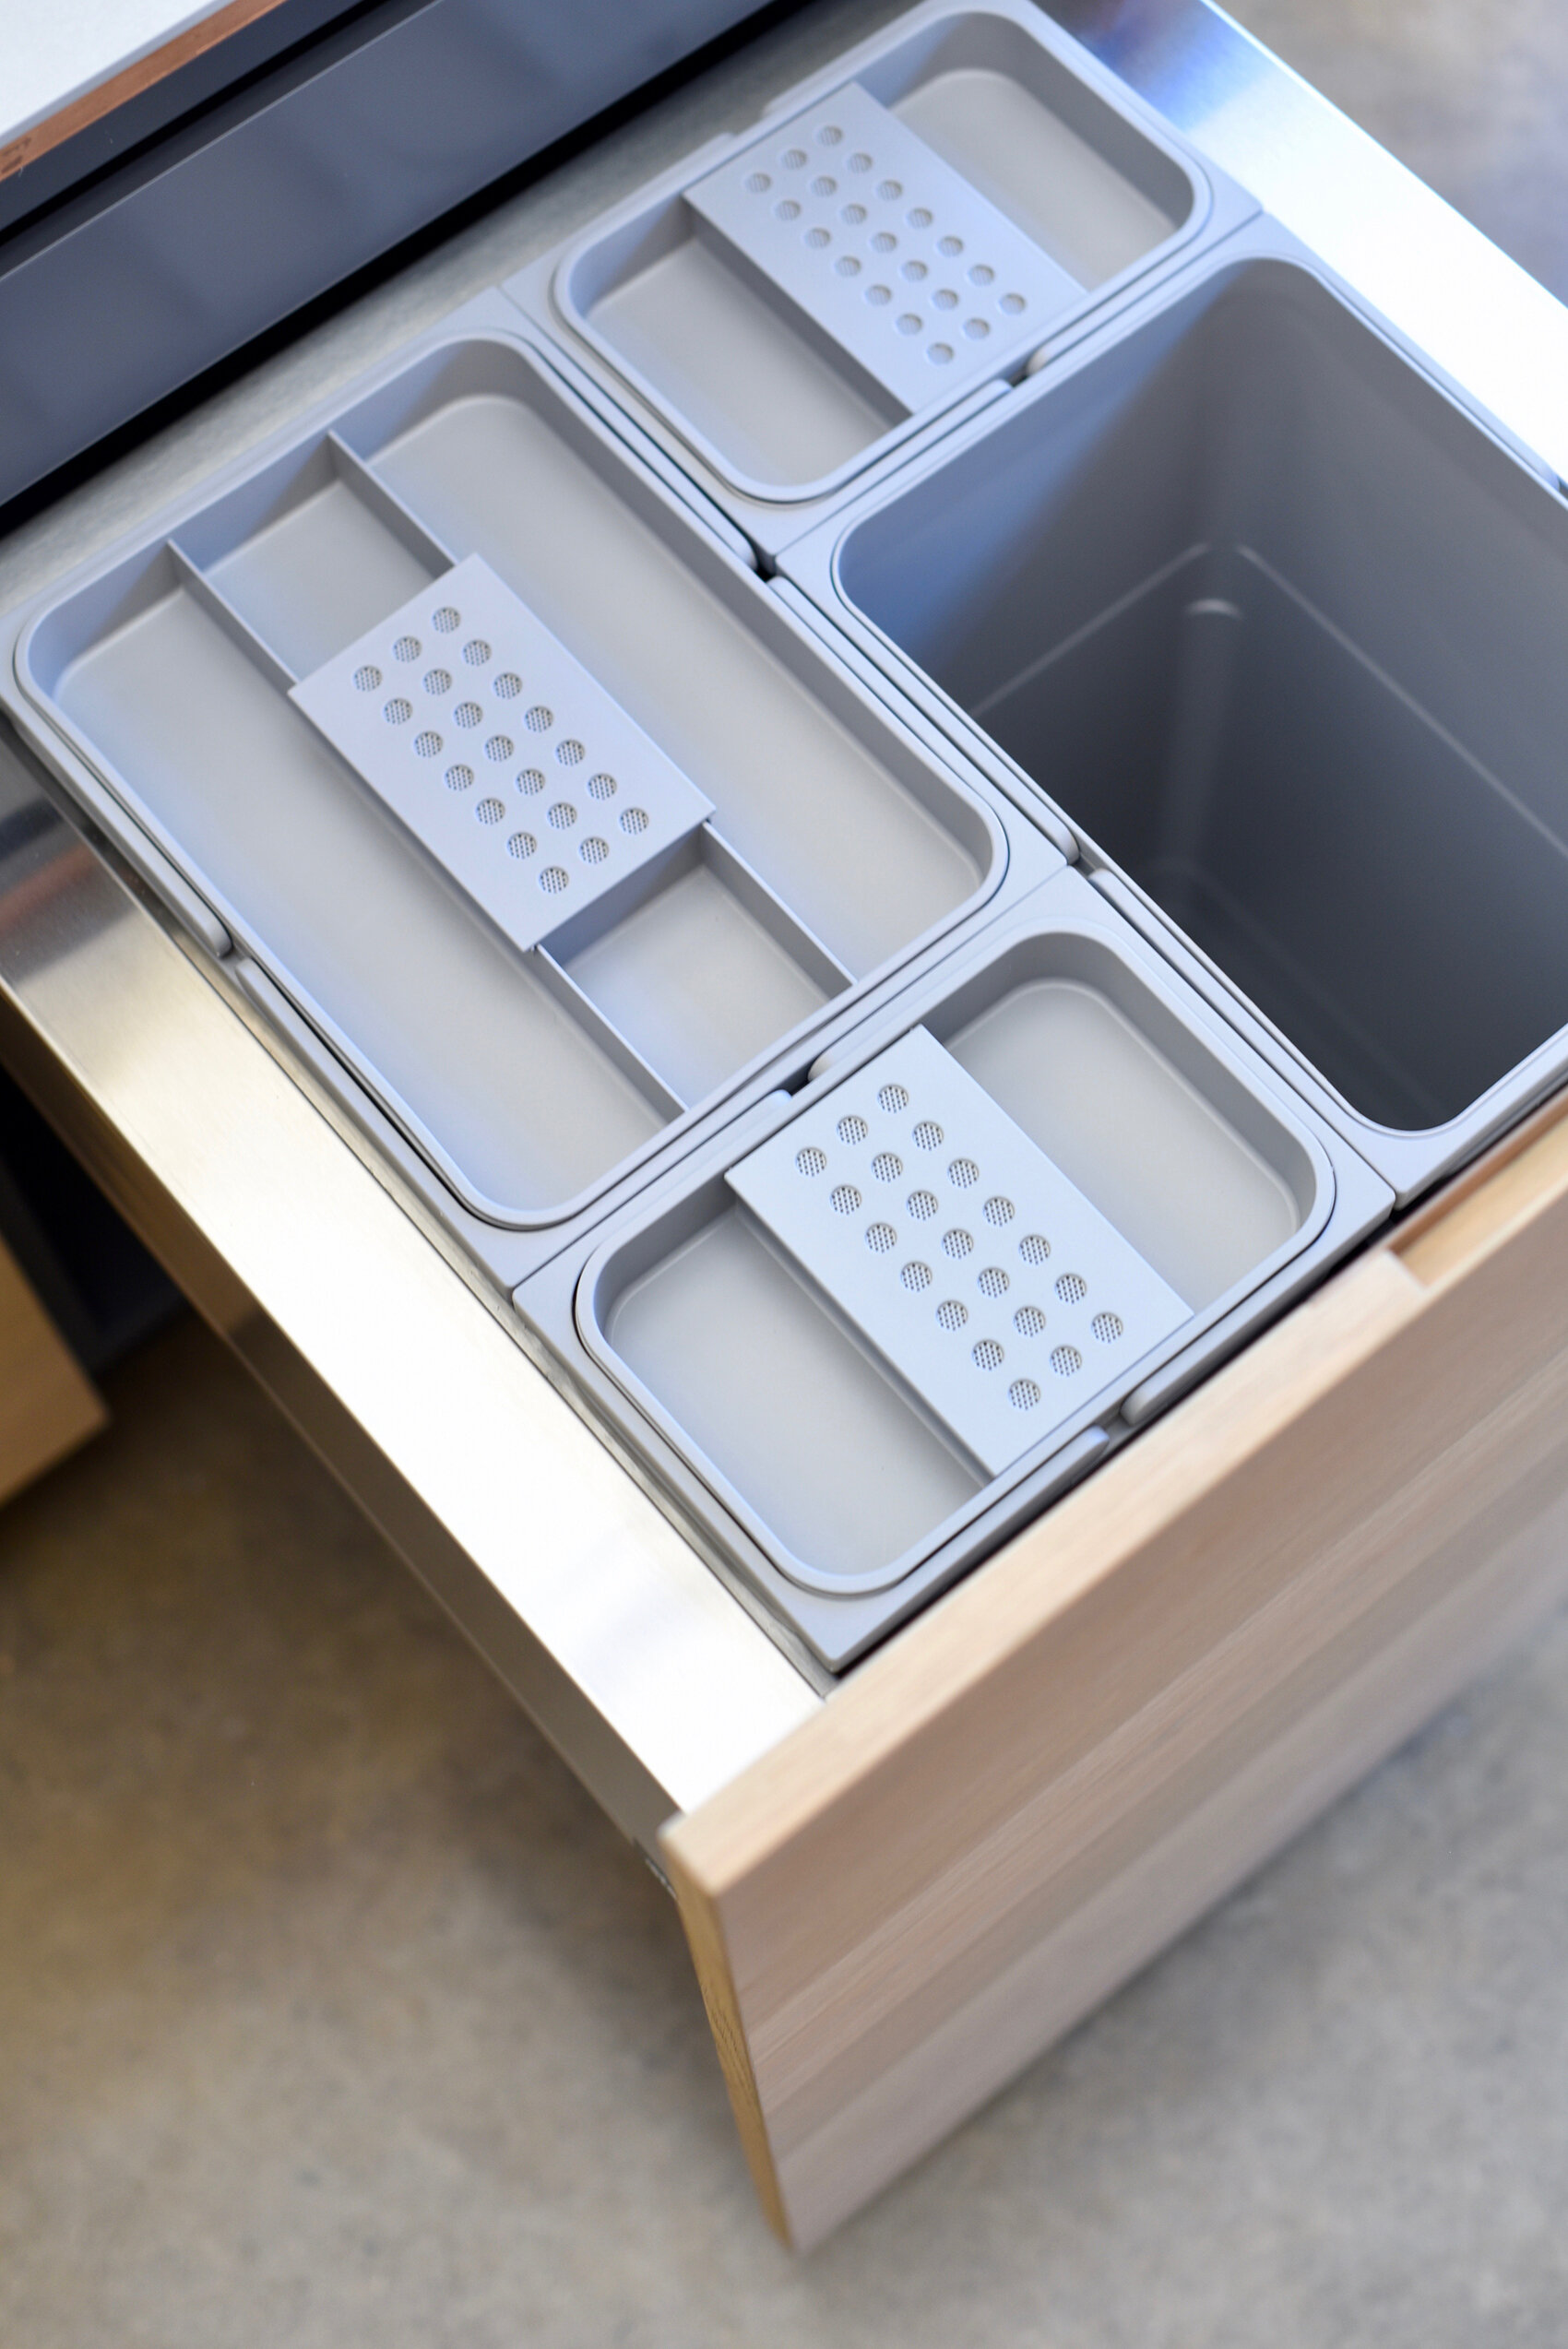 Petit bac à compost de cuisine - Poubelle de comptoir de cuisine de 5L avec  couvercle pour composteur de déchets de cuisine - Poubelle de cuisine  intérieure (bleu)